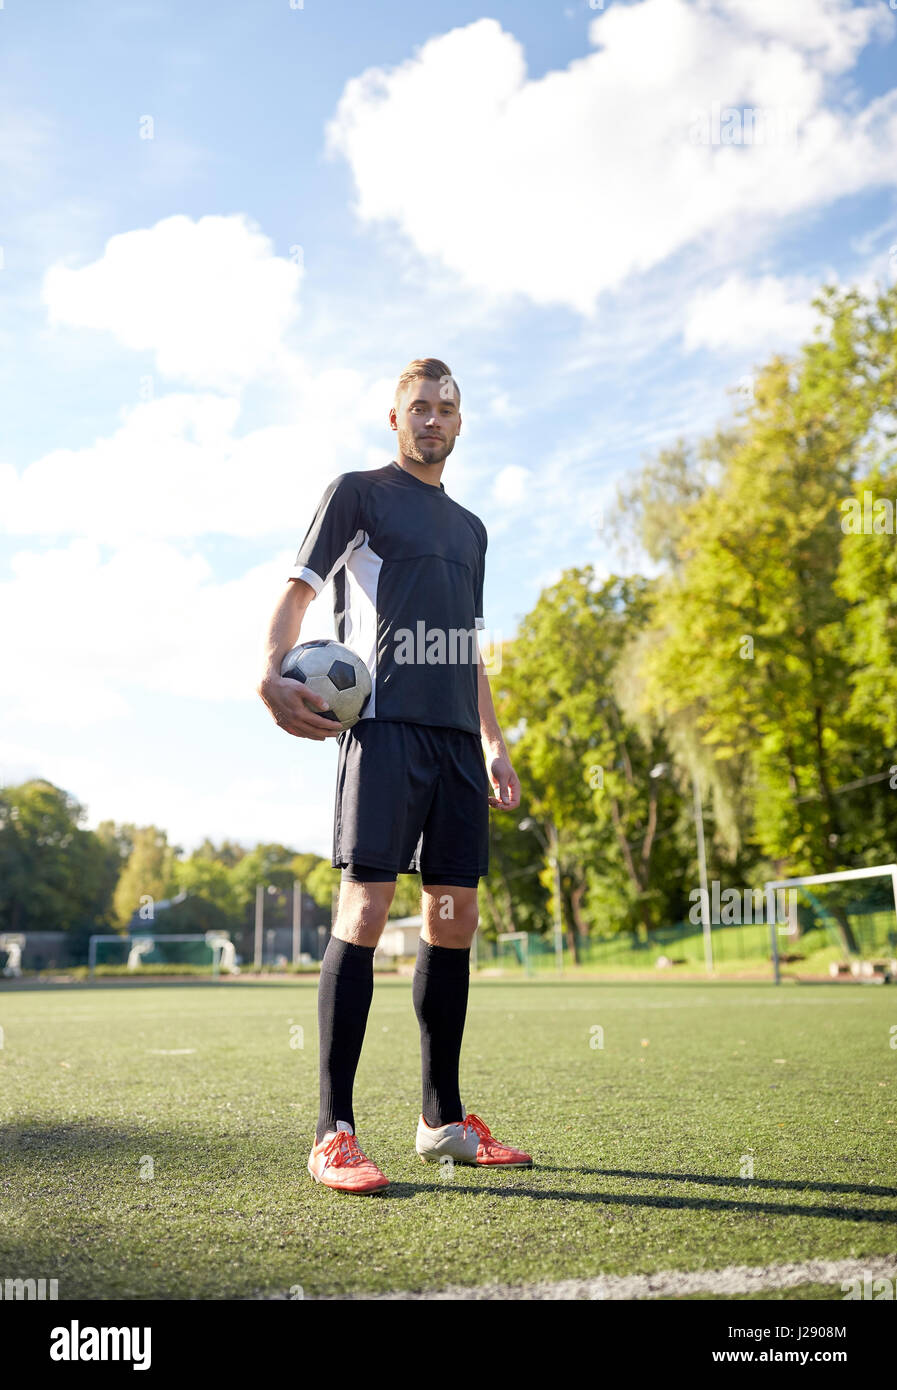 Fußballspieler mit Ball auf Fußballplatz Stockfoto